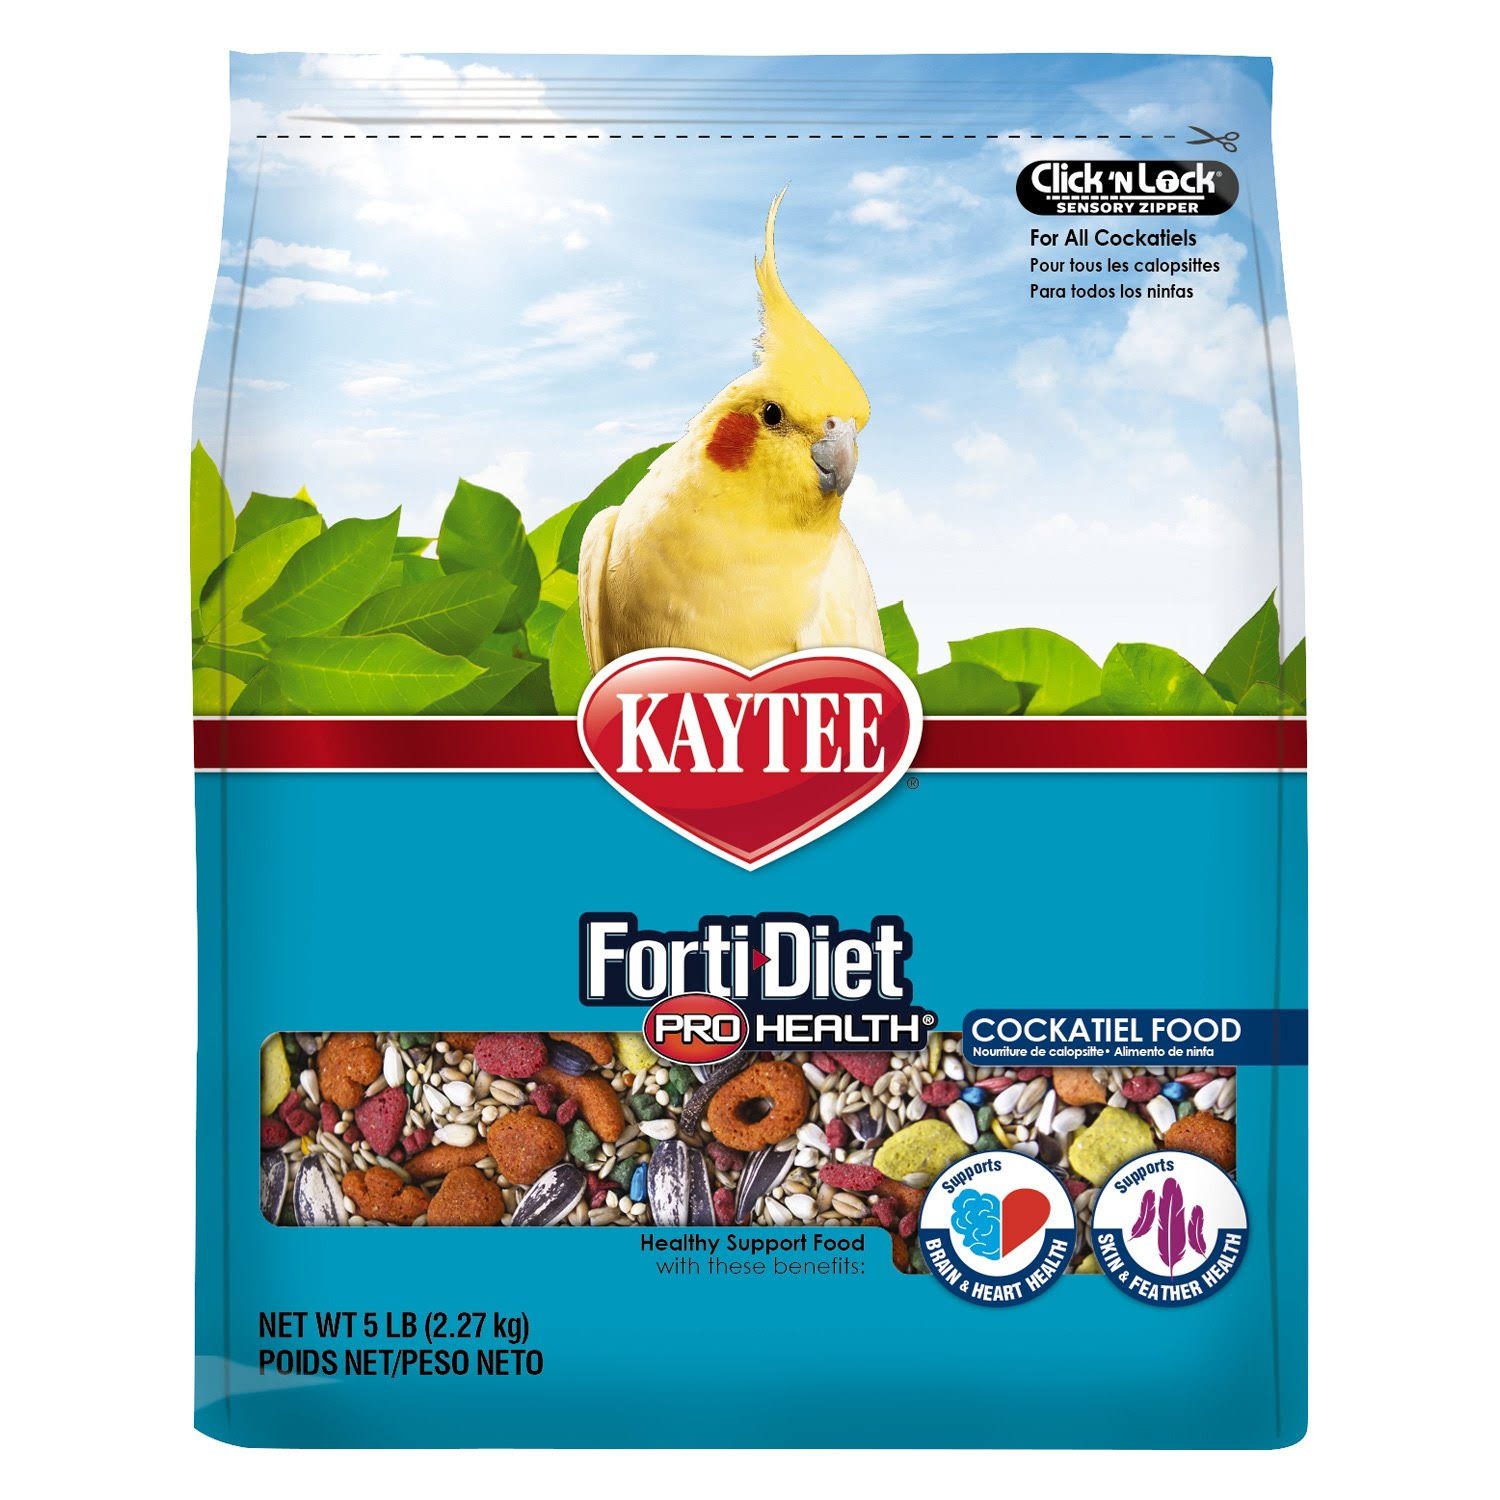 Kaytee Forti Diet Pro Health Bird Food for Cockatiels